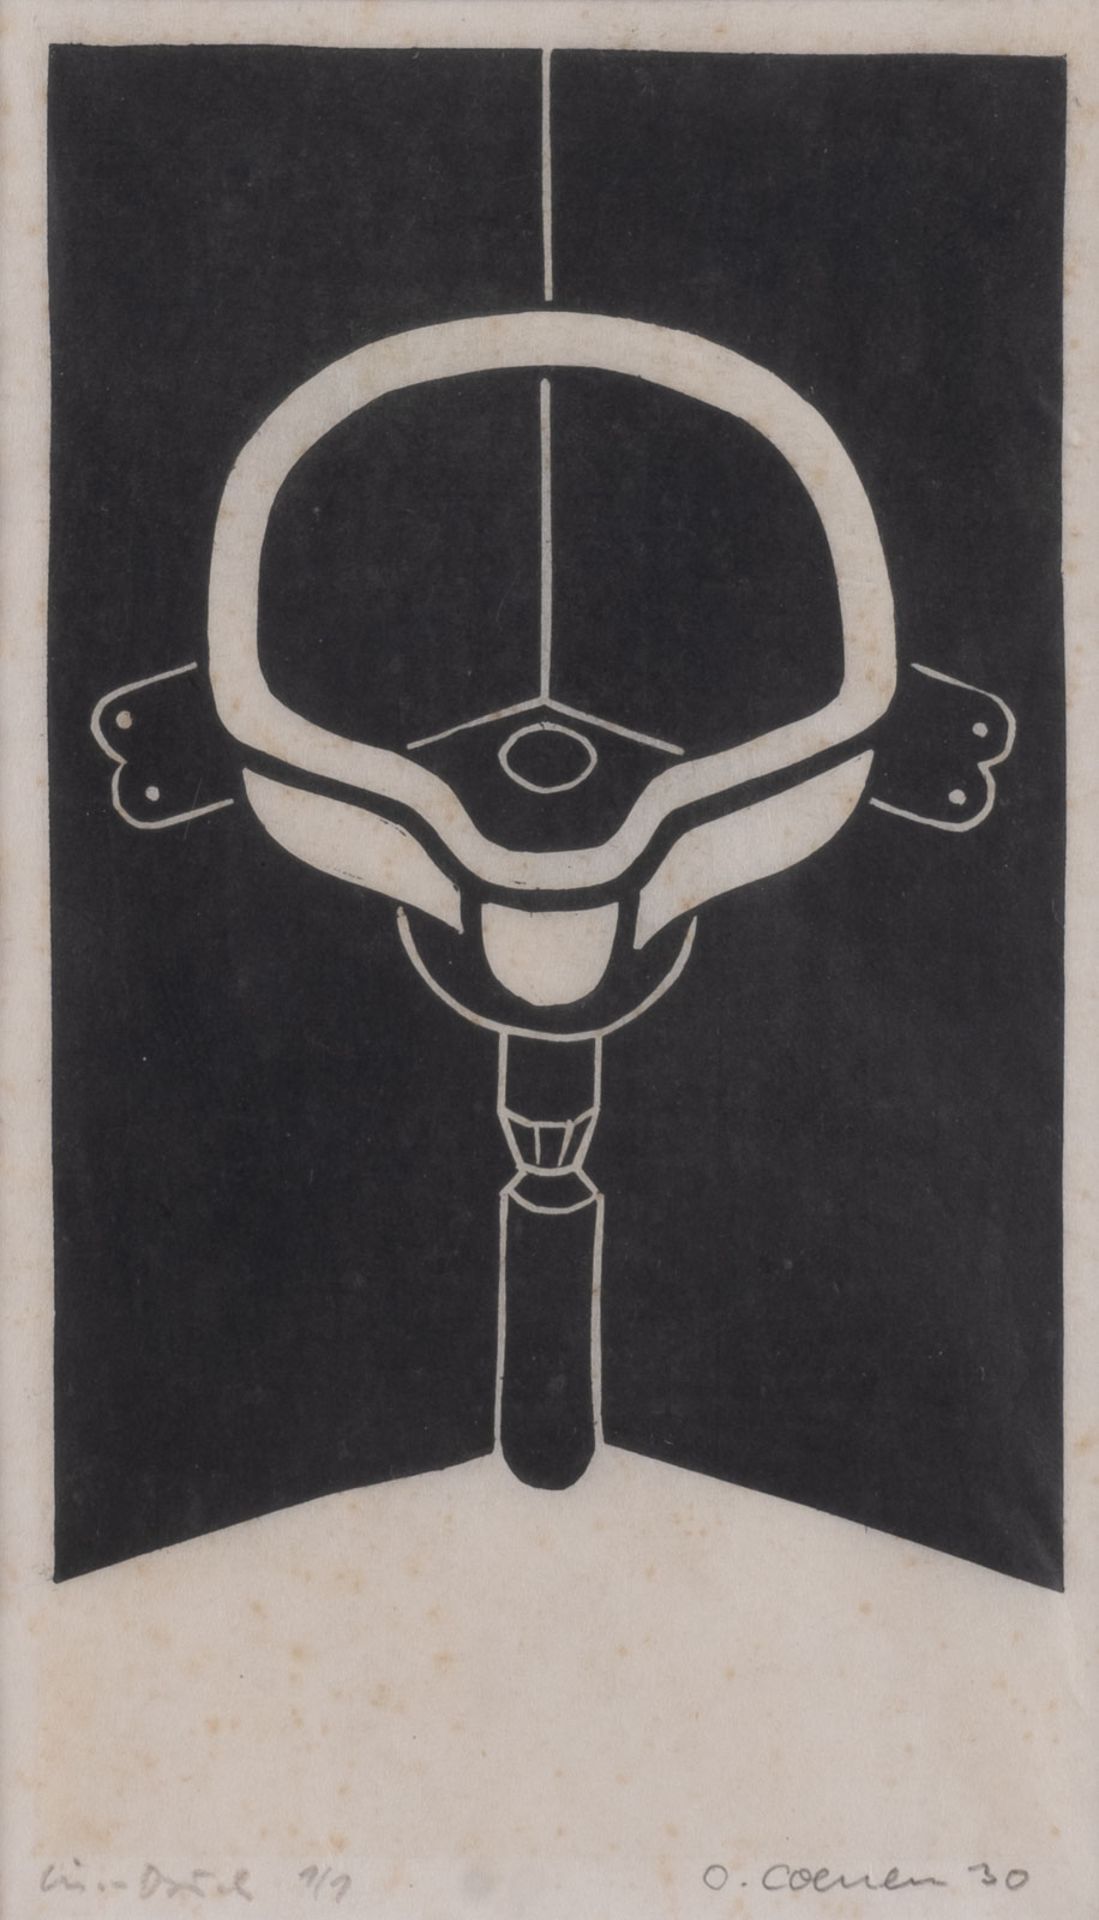 OTTO COENEN, KONVOLUT VON DREI LINOLSCHNITTEN (1930) - Image 2 of 3